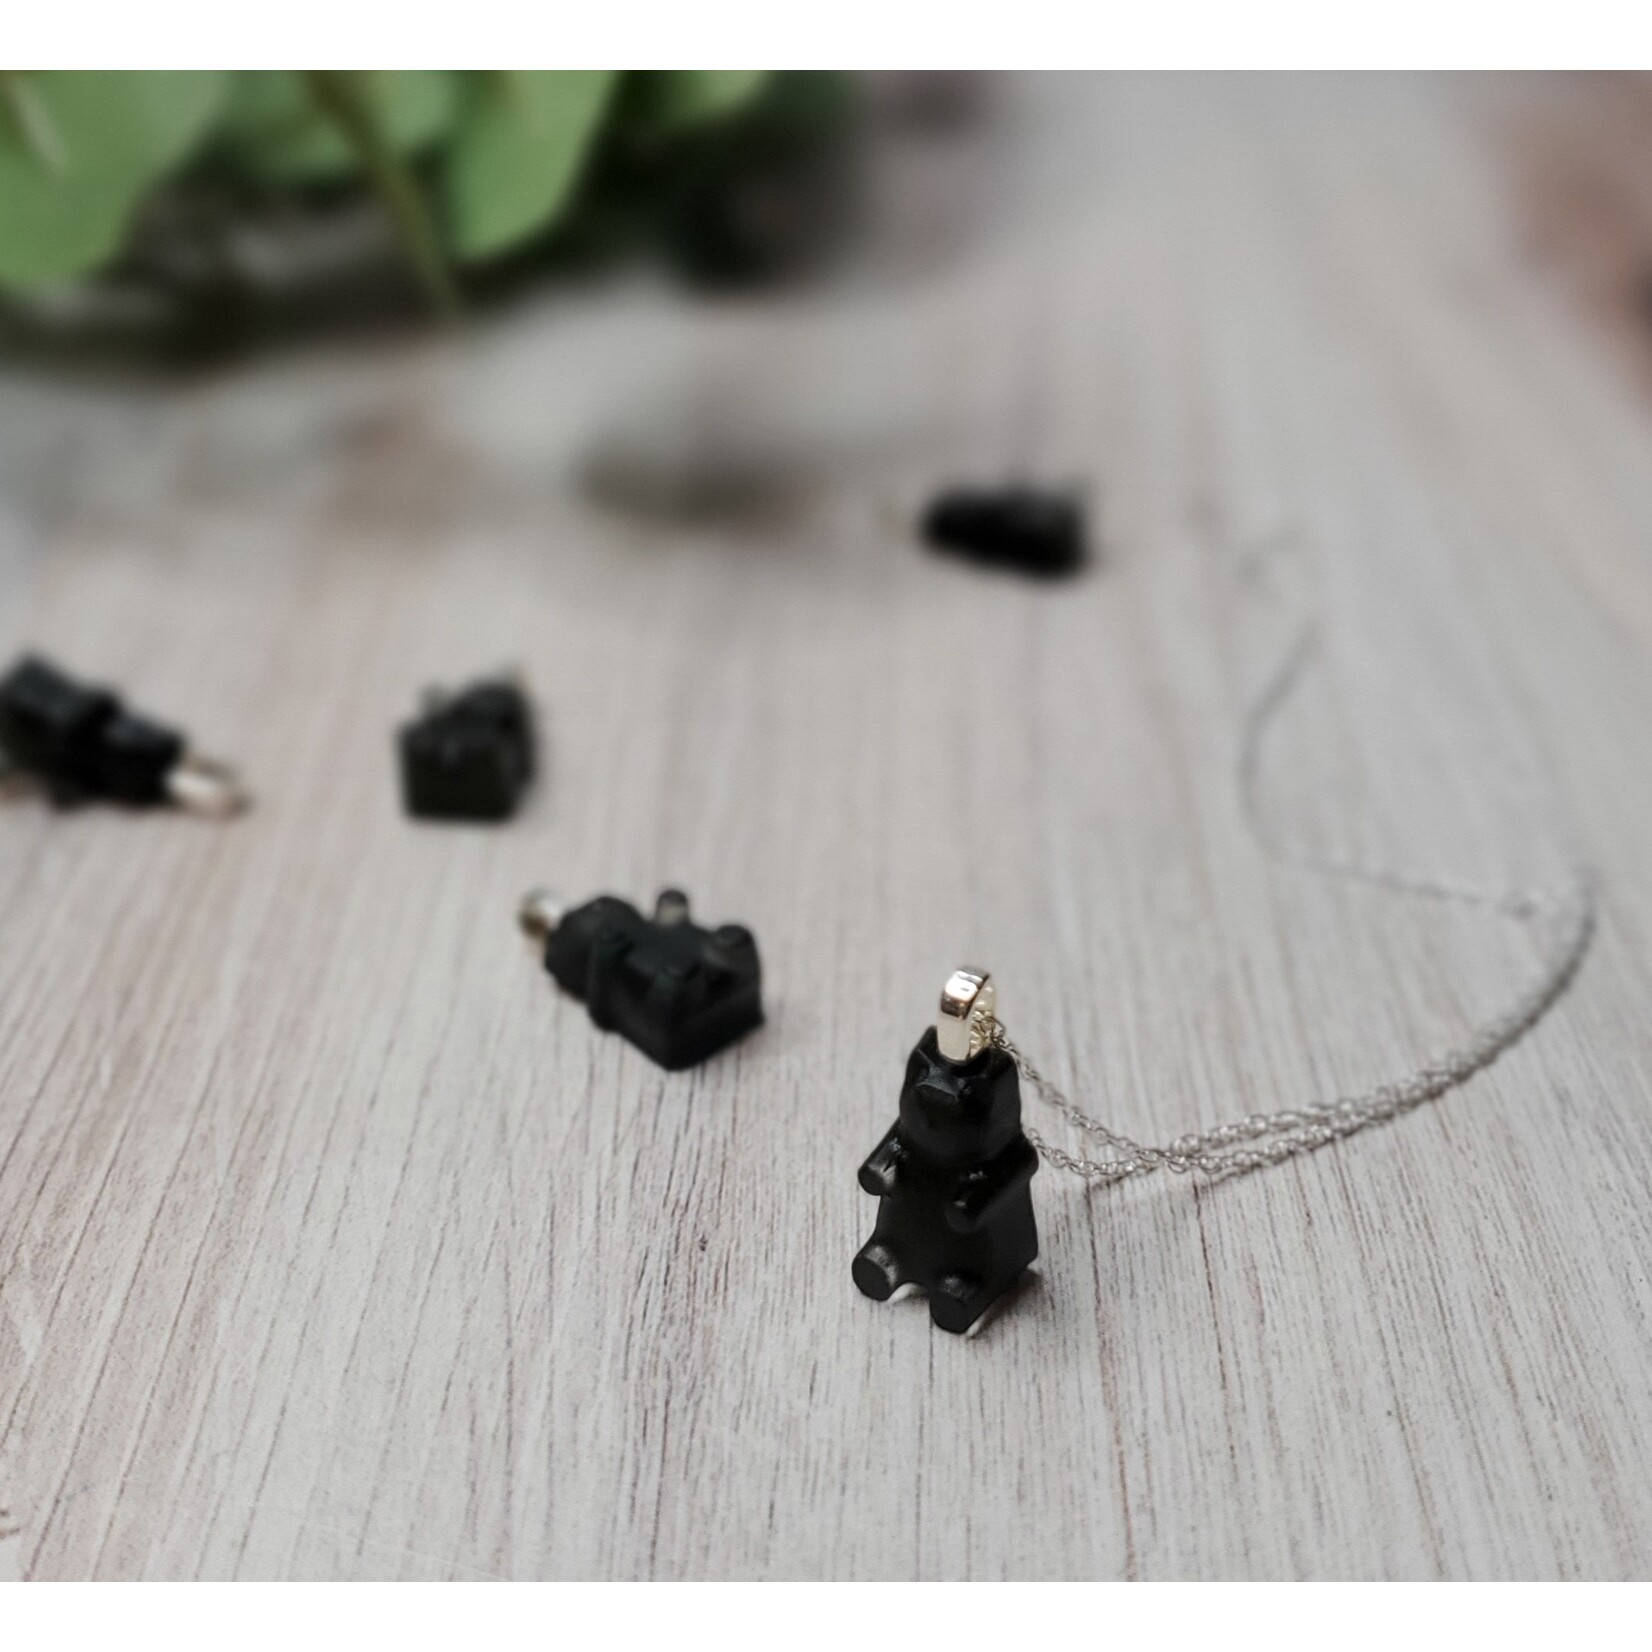 Stirling Studios Gummy Bear Necklace - Black